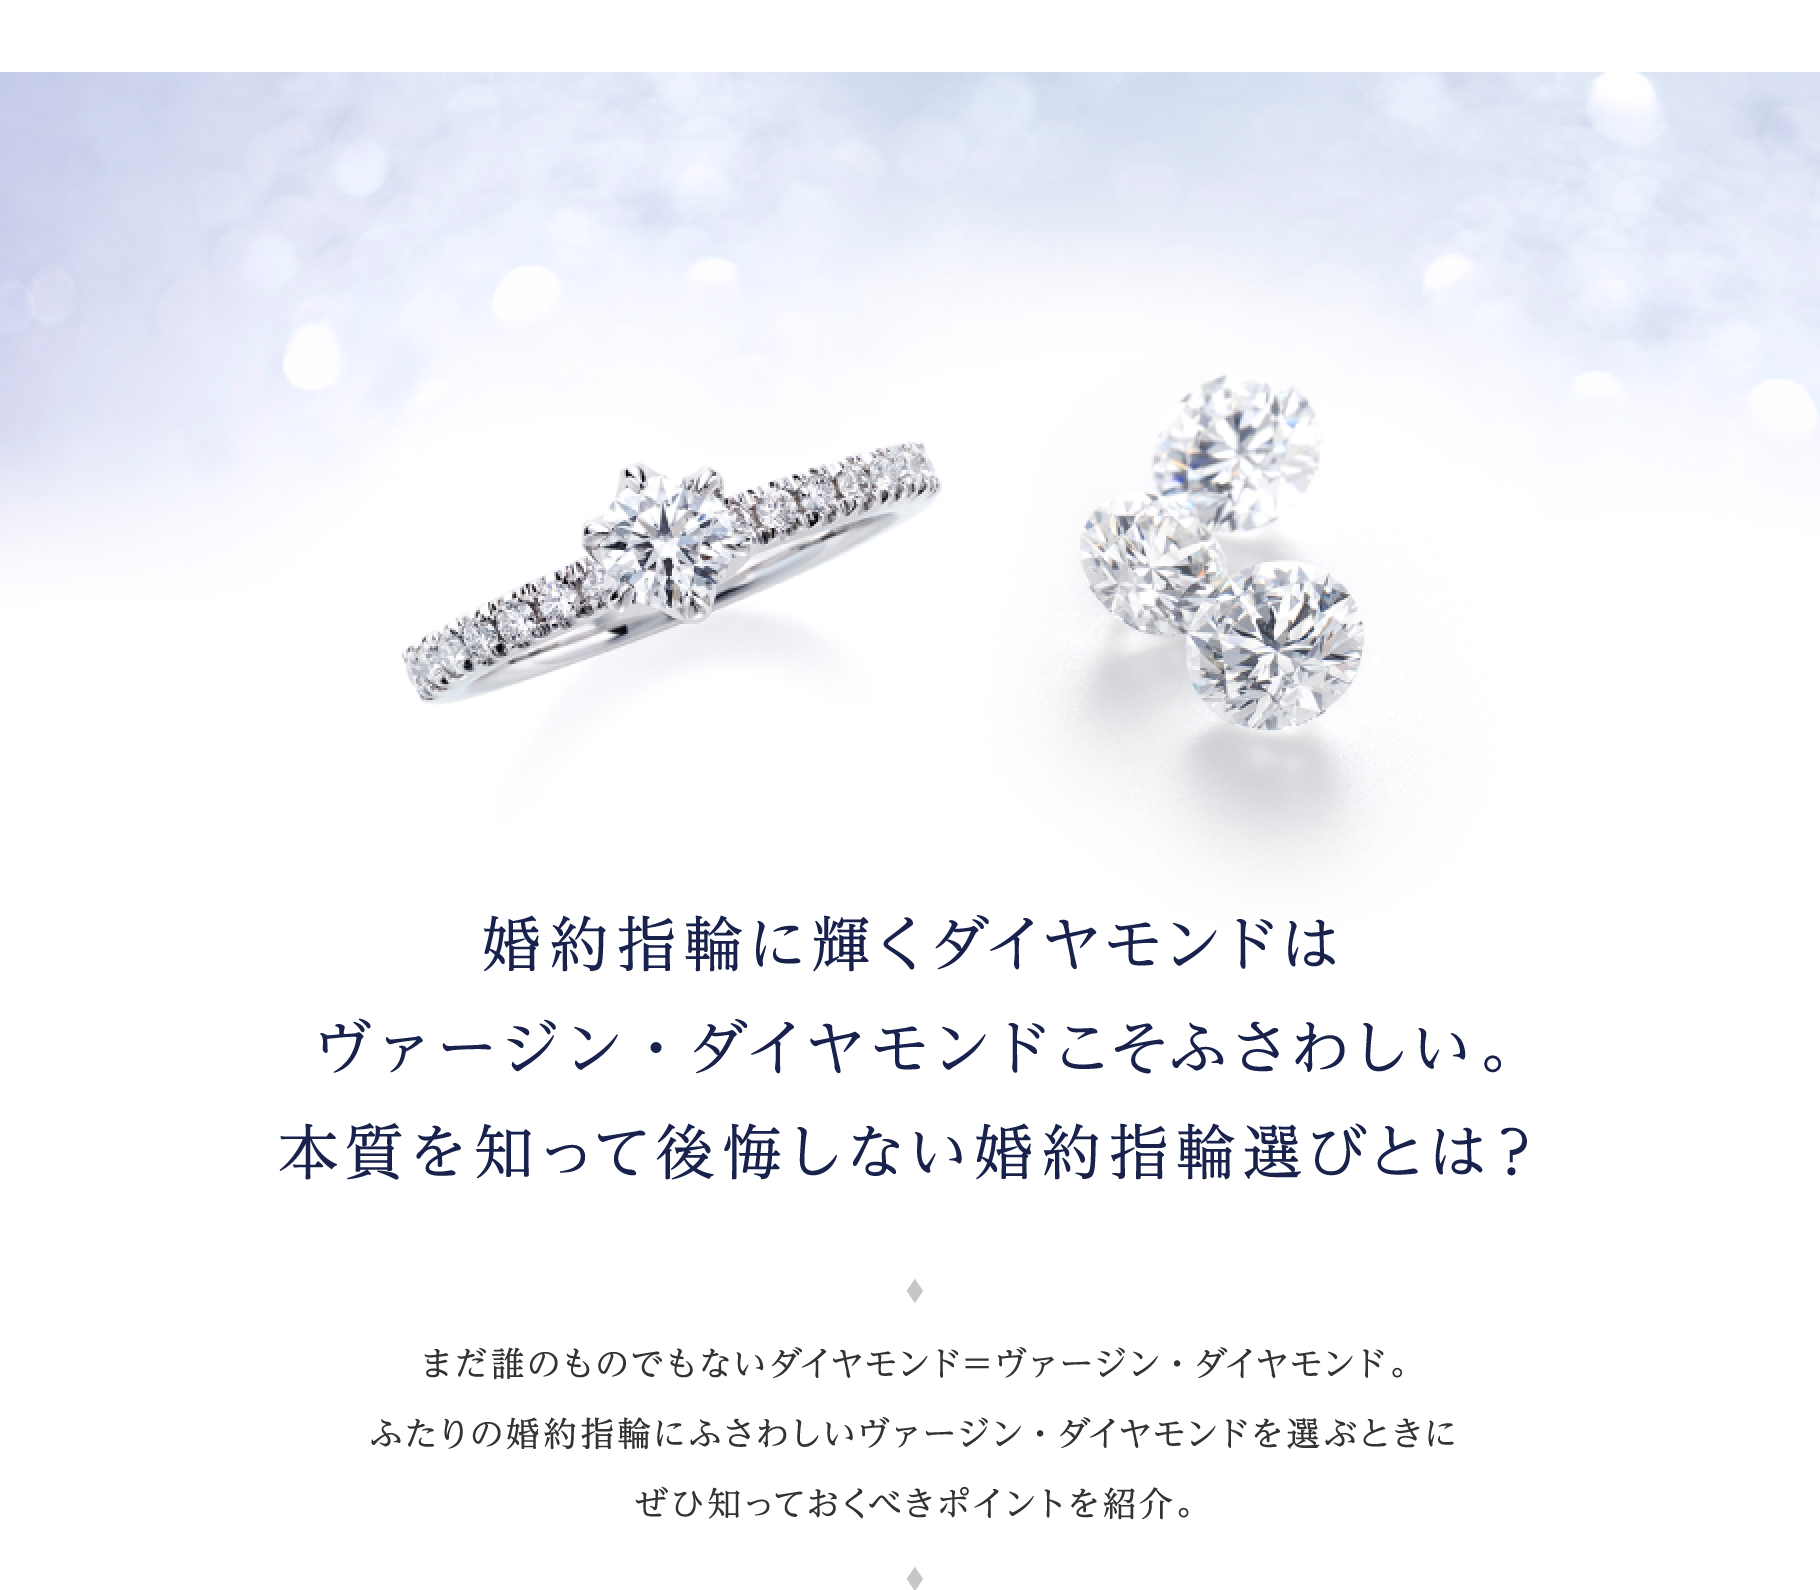 婚約指輪に輝くダイヤモンドはヴァージン・ダイヤモンドこそふさわしい。本質を知って後悔しない婚約指輪選びとは？ まだ誰のものでもないダイヤモンド＝ヴァージン・ダイヤモンド。ふたりの婚約指輪にふさわしいヴァージン・ダイヤモンドを選ぶときにぜひ知っておくべきポイントを紹介。